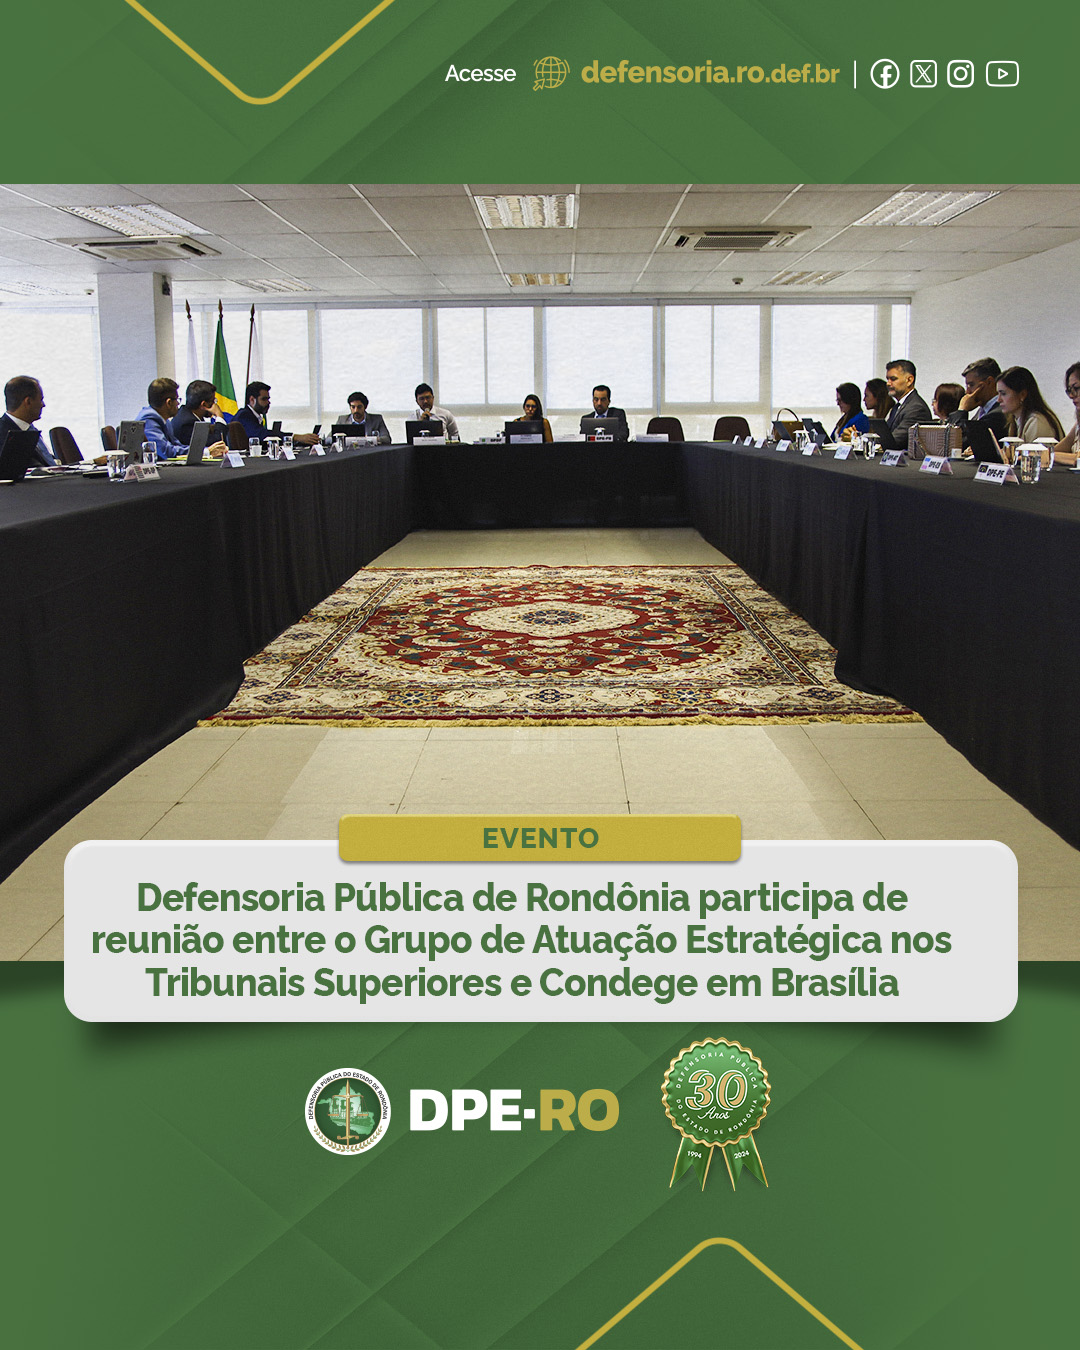 Defensoria Pública de Rondônia participa de reunião entre o Grupo de Atuação Estratégica nos Tribunais Superiores e Condege em Brasília